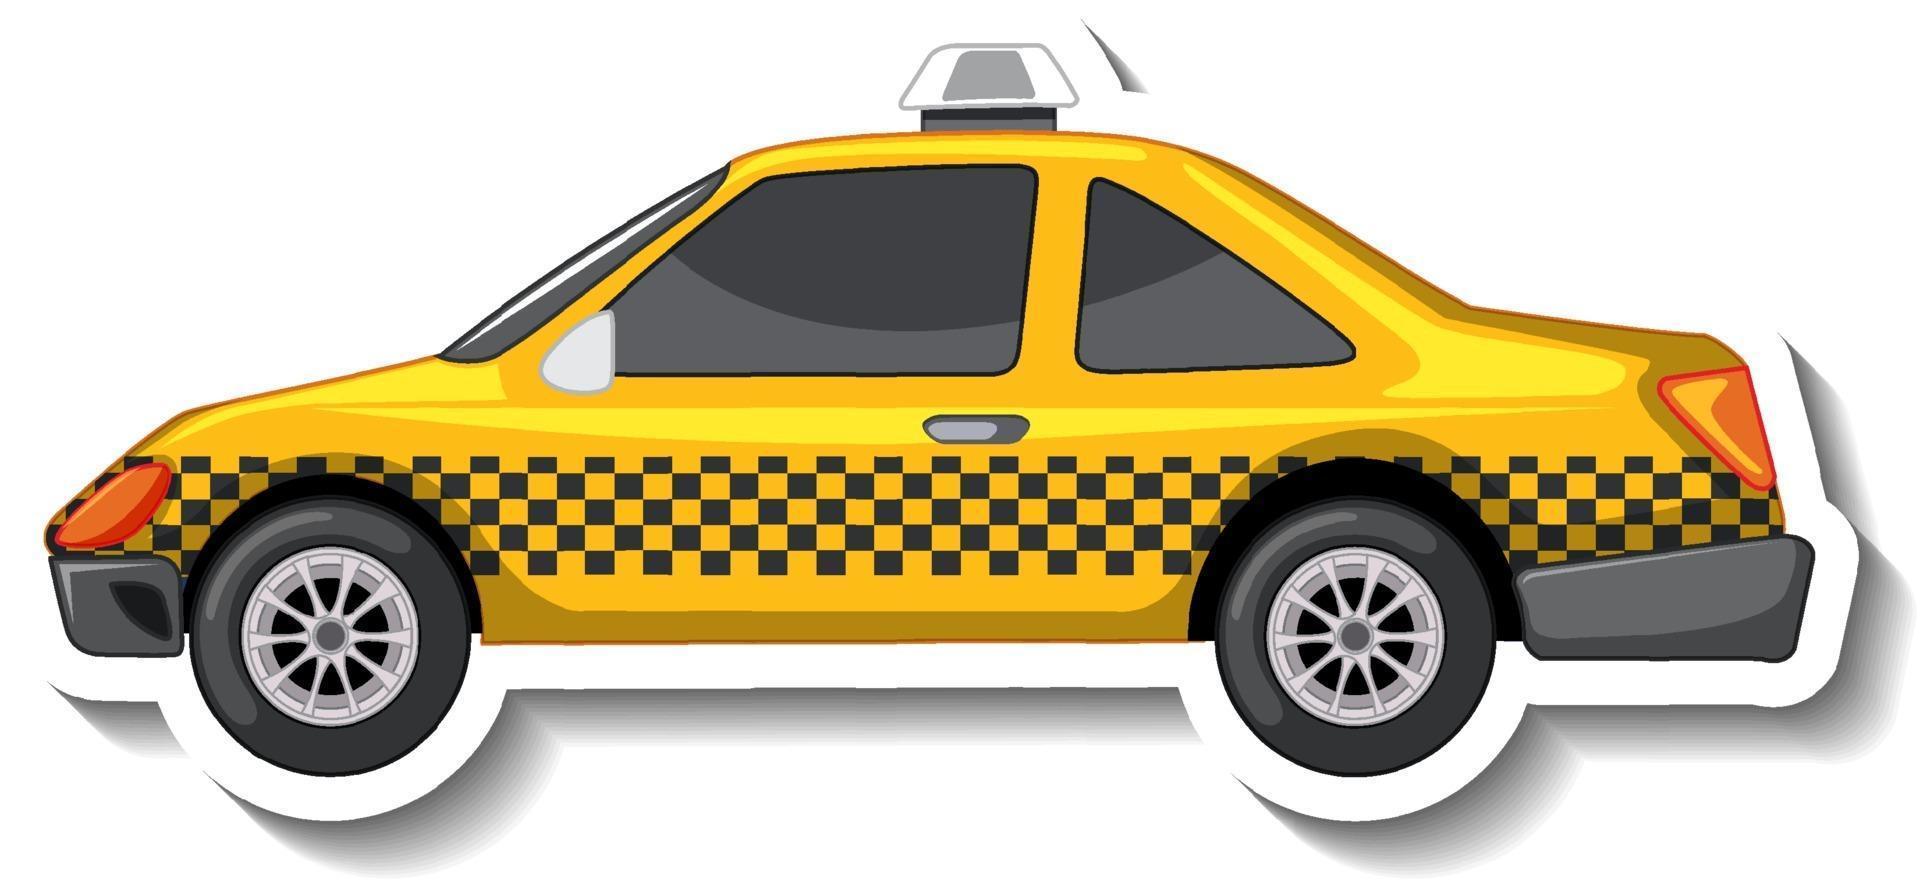 Diseño de etiqueta con vista lateral de un taxi aislado vector